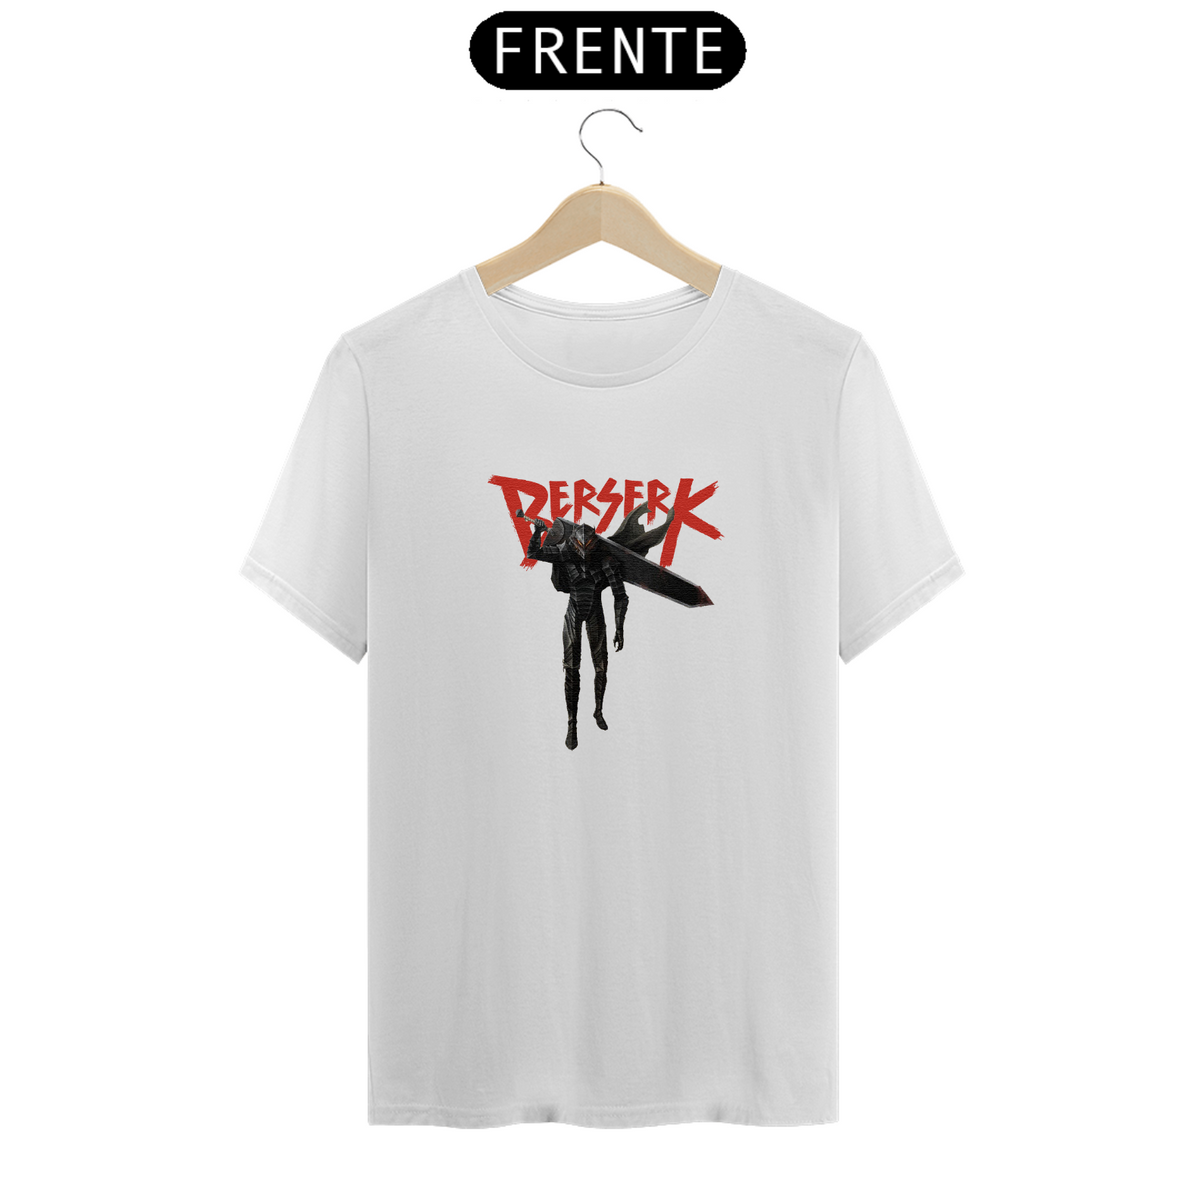 Nome do produto: Camiseta Unissex Berserk 7